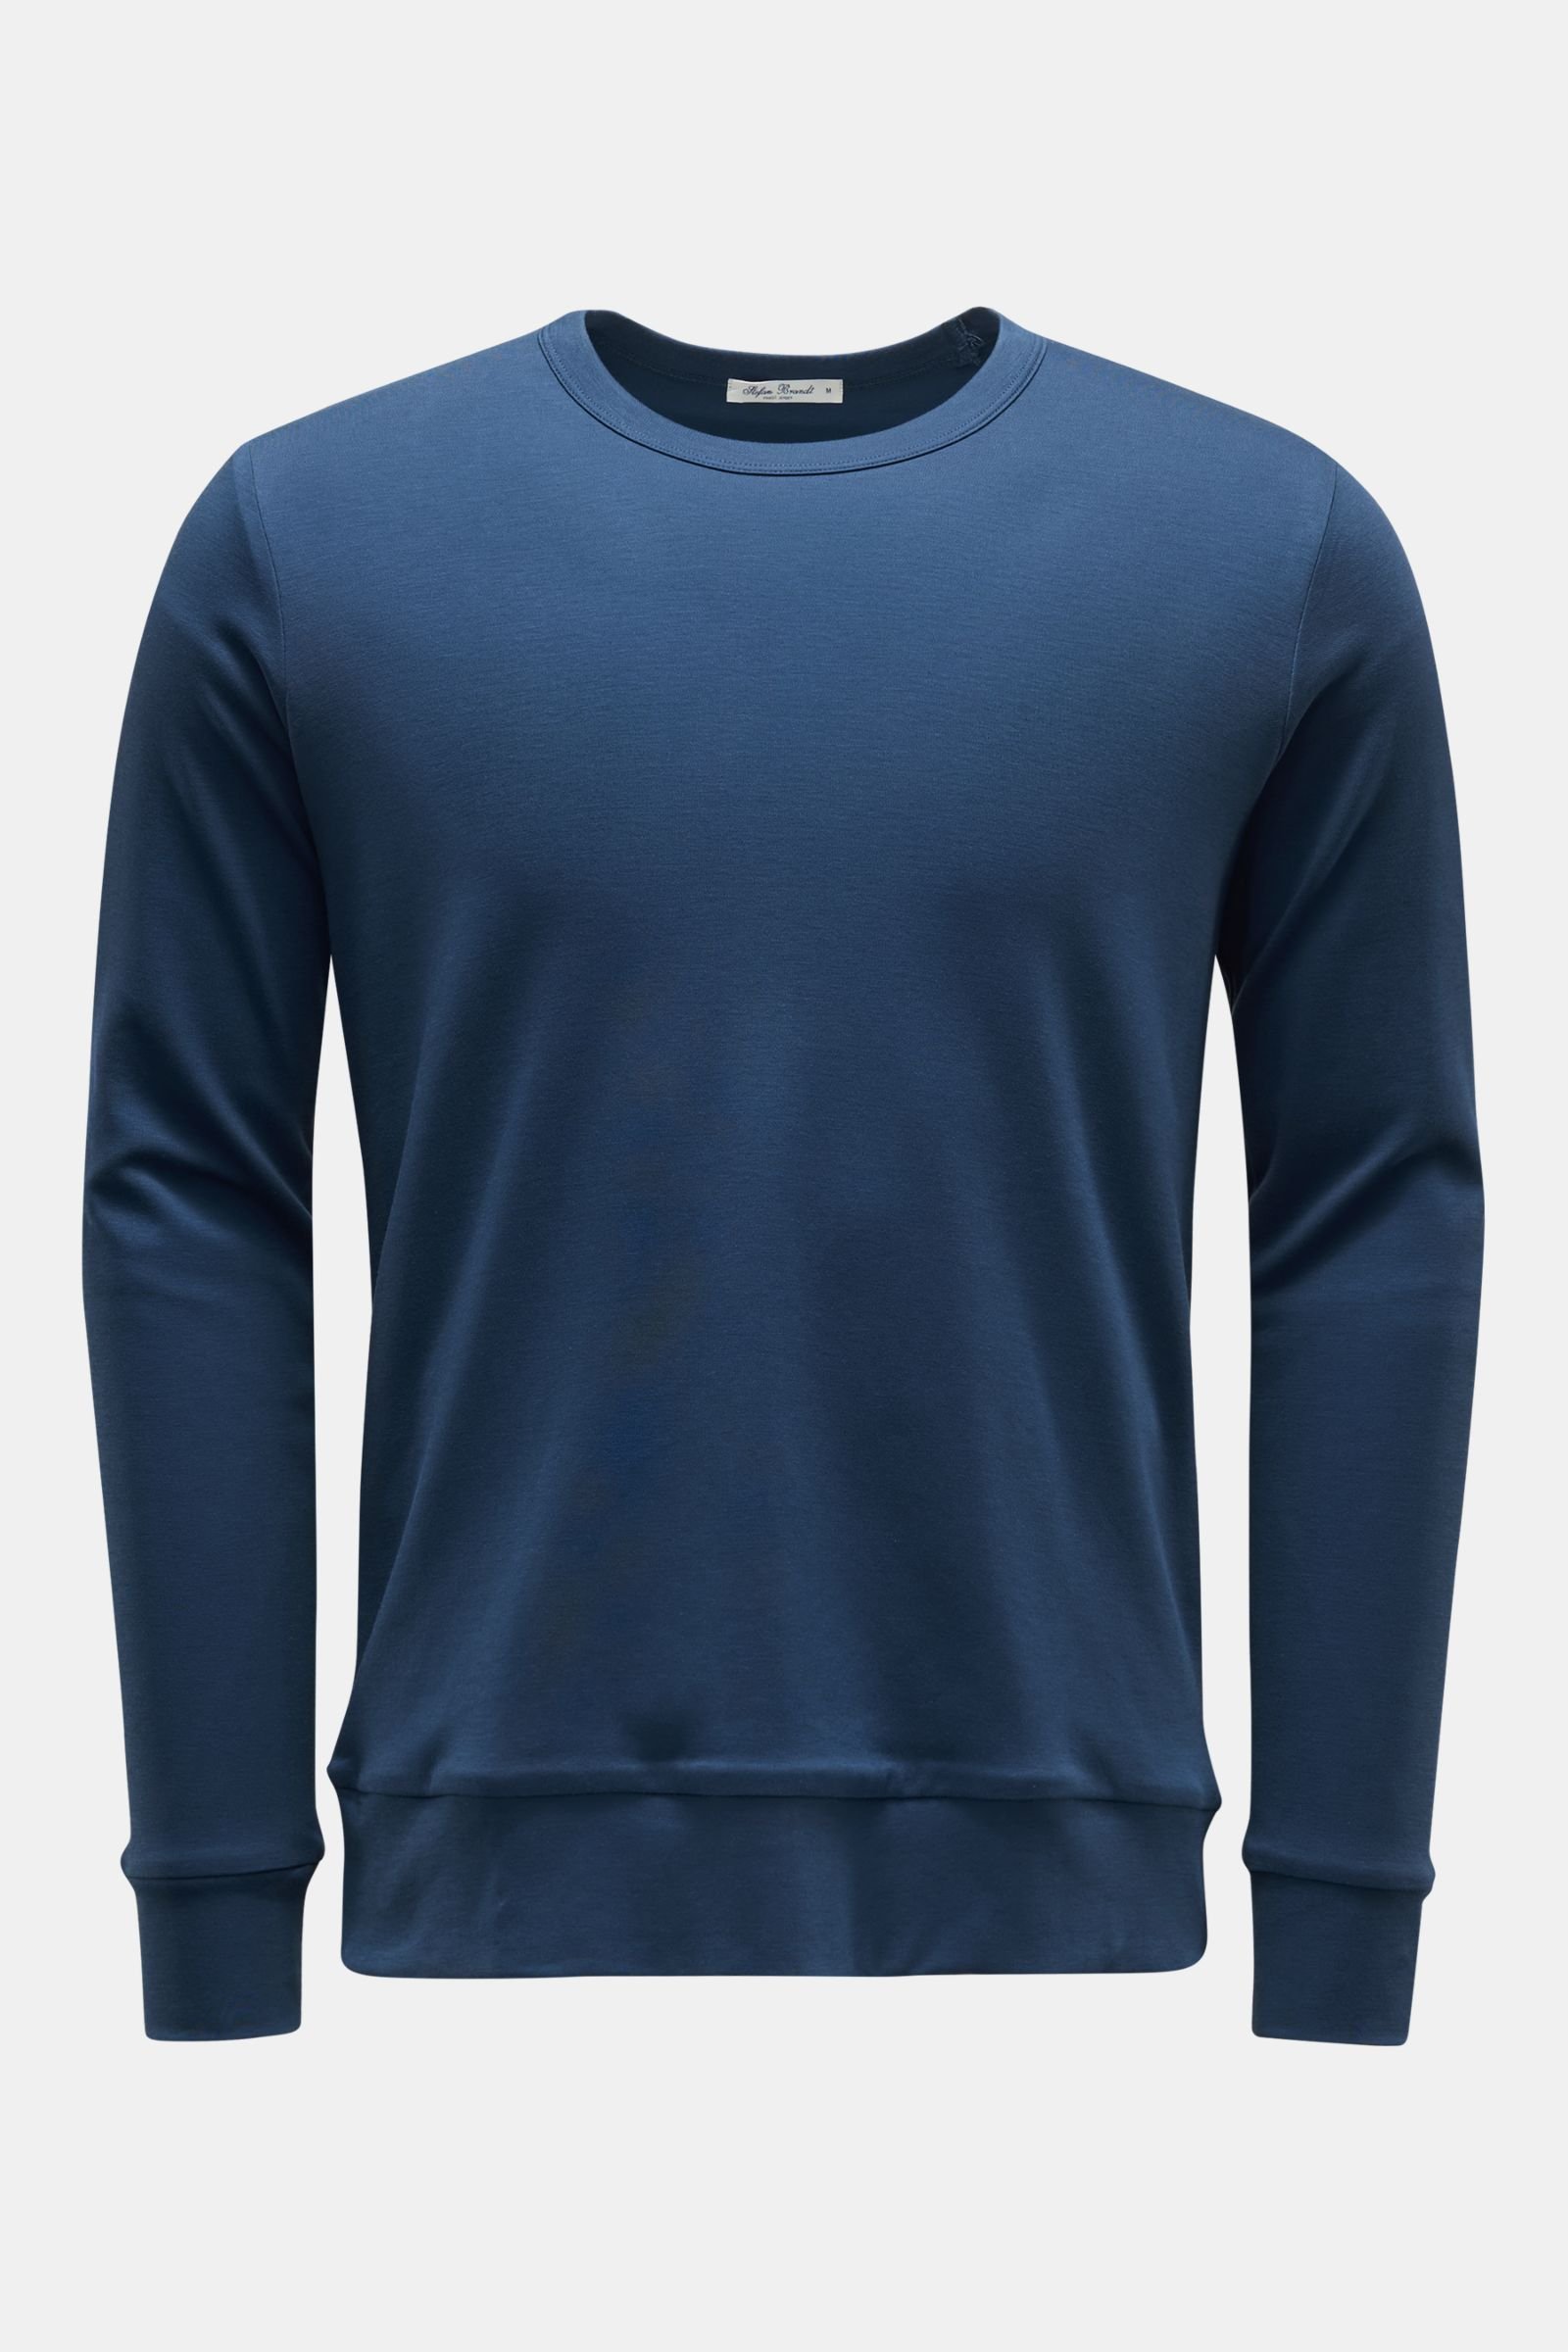 Crew neck sweatshirt 'Eden' dark blue